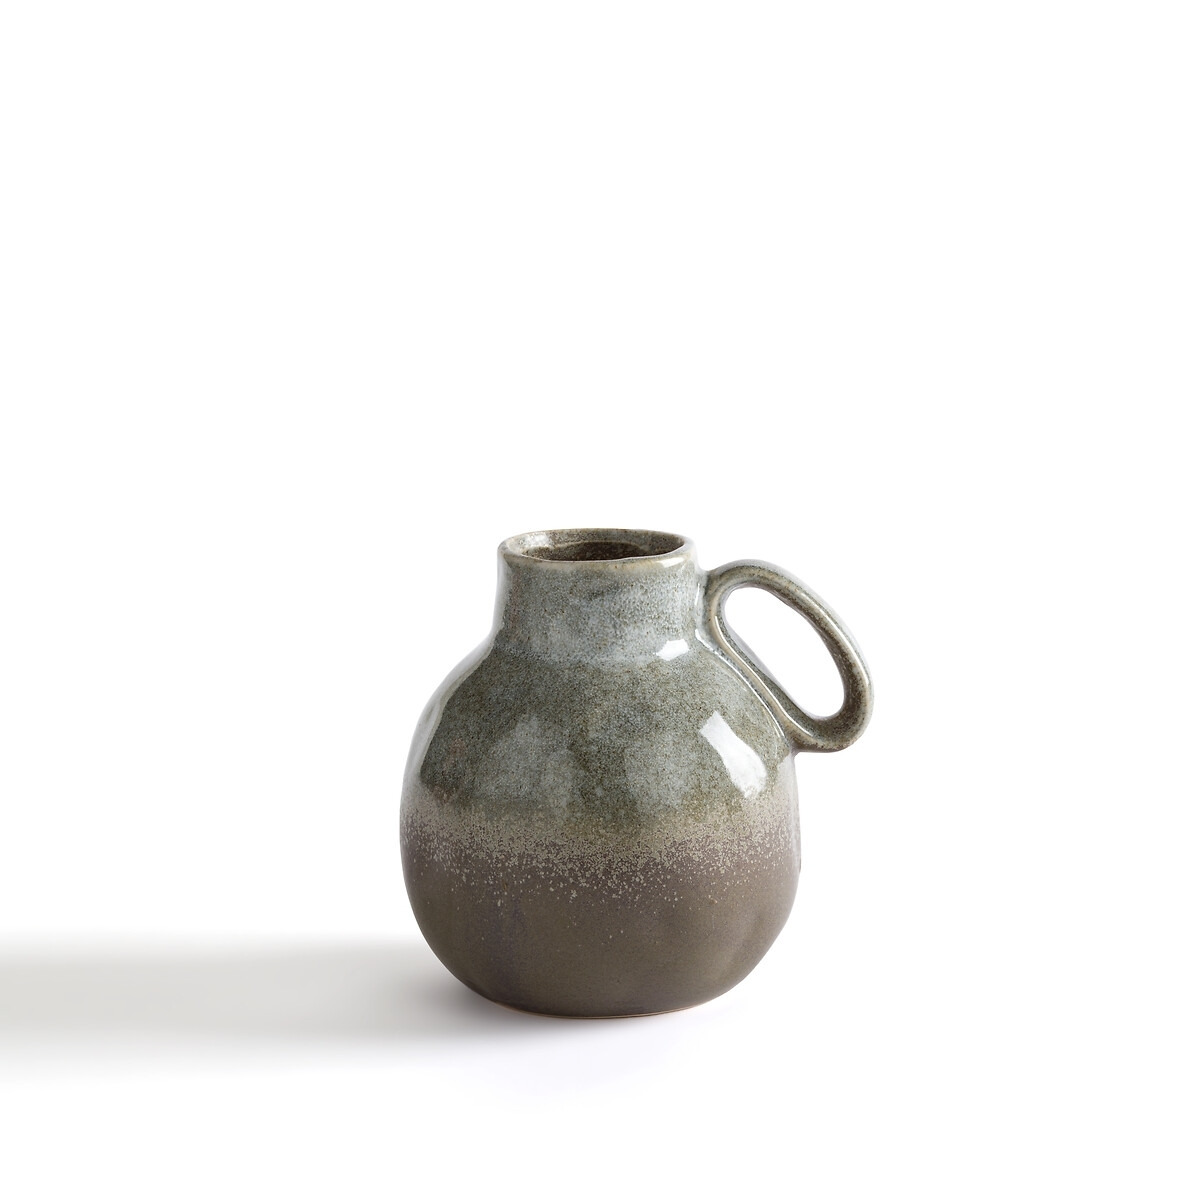 Regona 15cm High Ceramic Vase - image 1